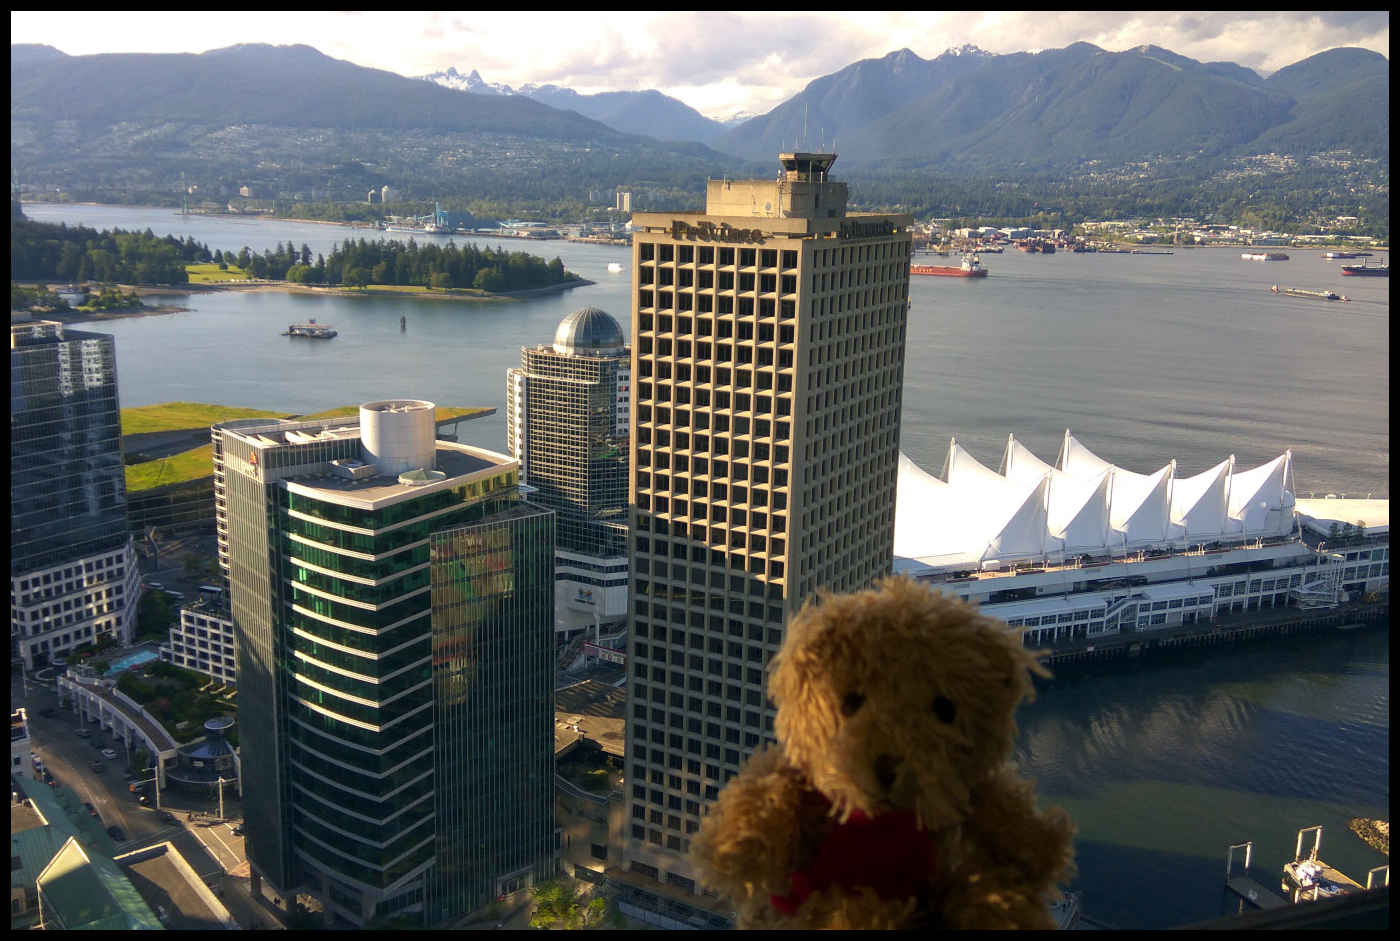 Harbour Centre - Vancouver Lookout